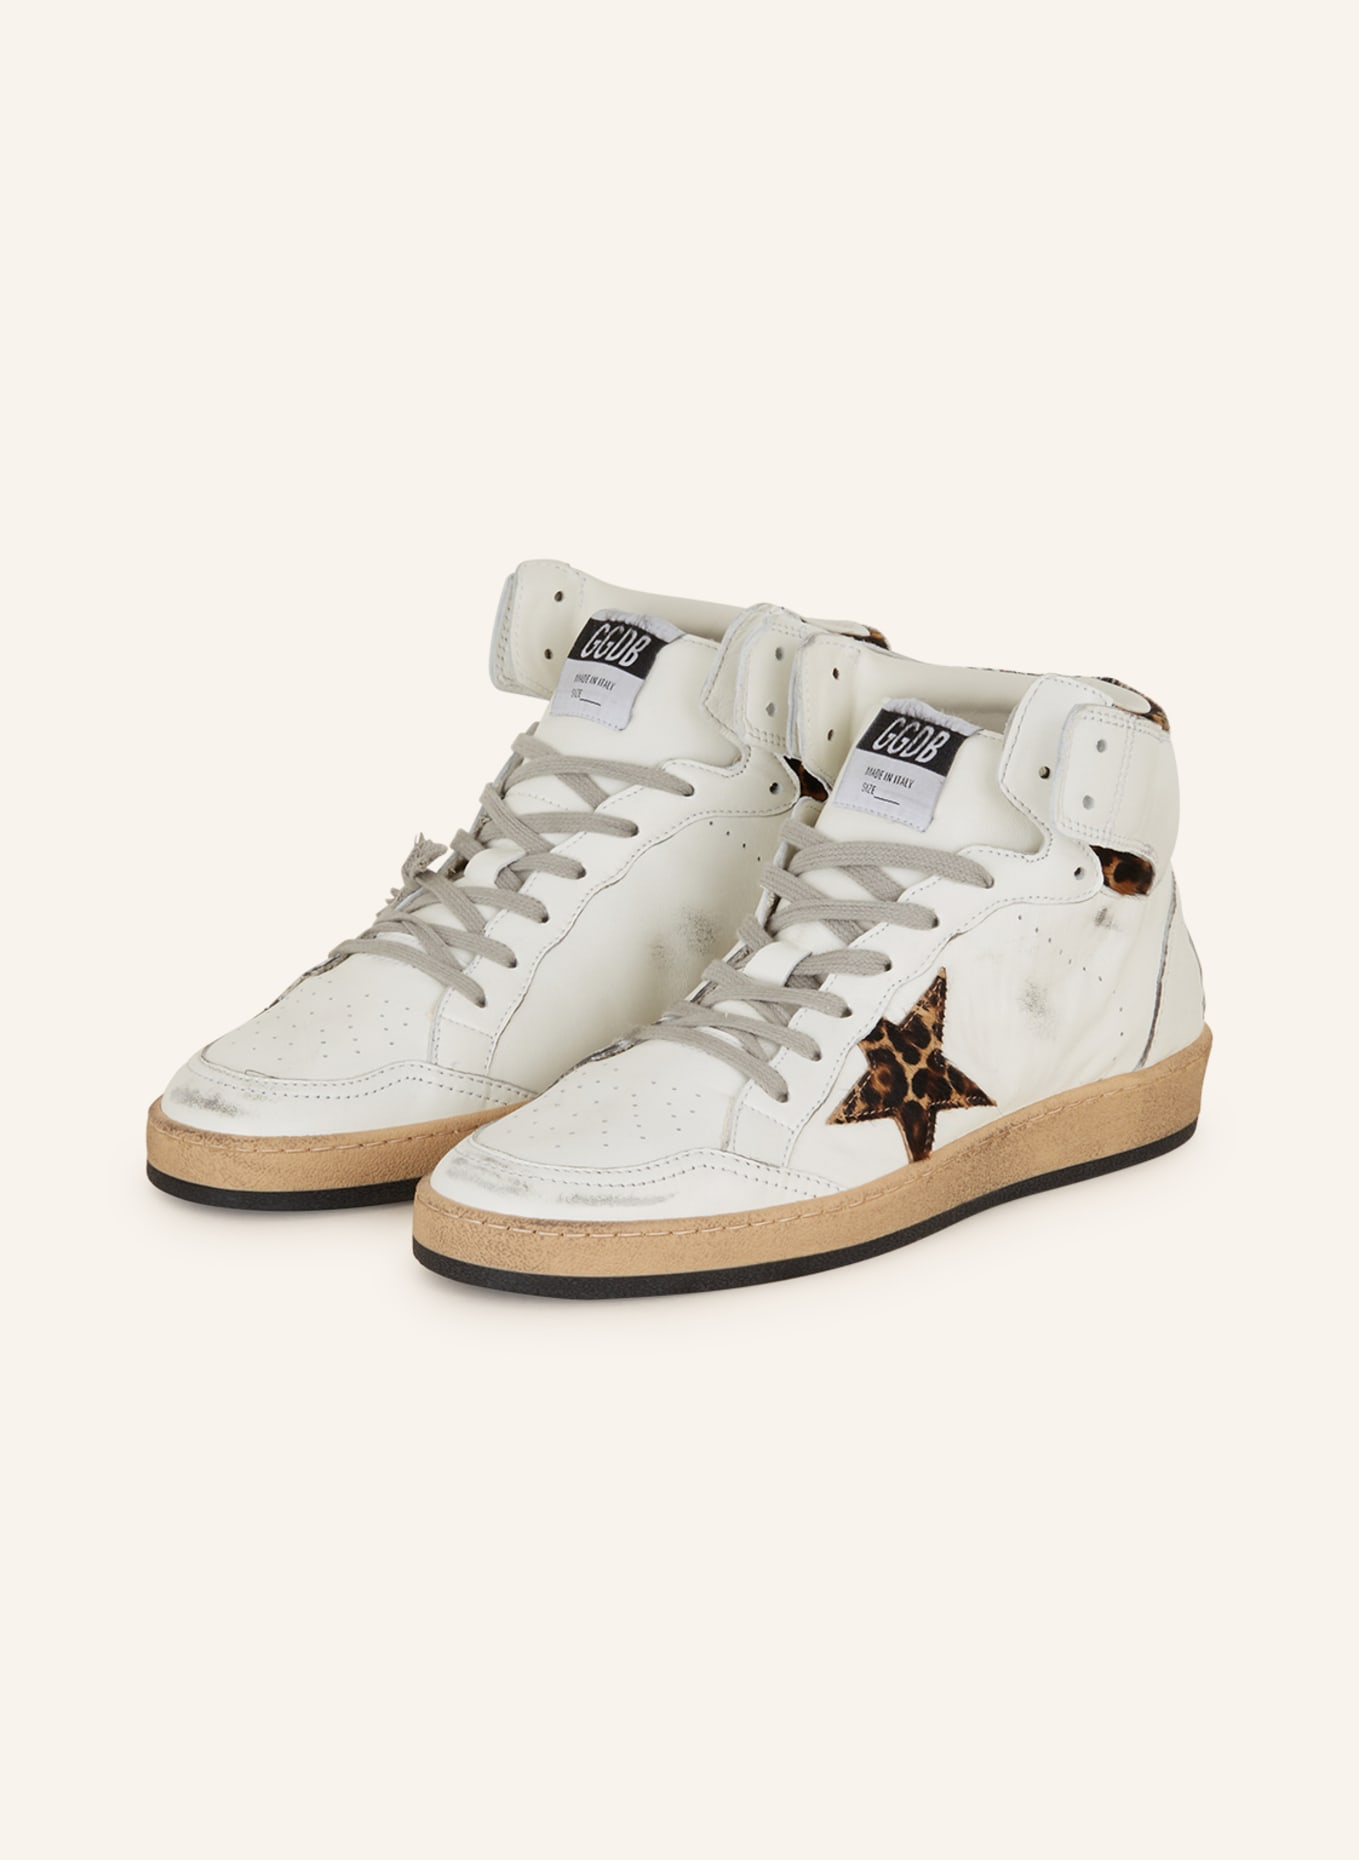 GOLDEN GOOSE Hightop-Sneaker SKY STAR, Farbe: WEISS/ SCHWARZ (Bild 1)